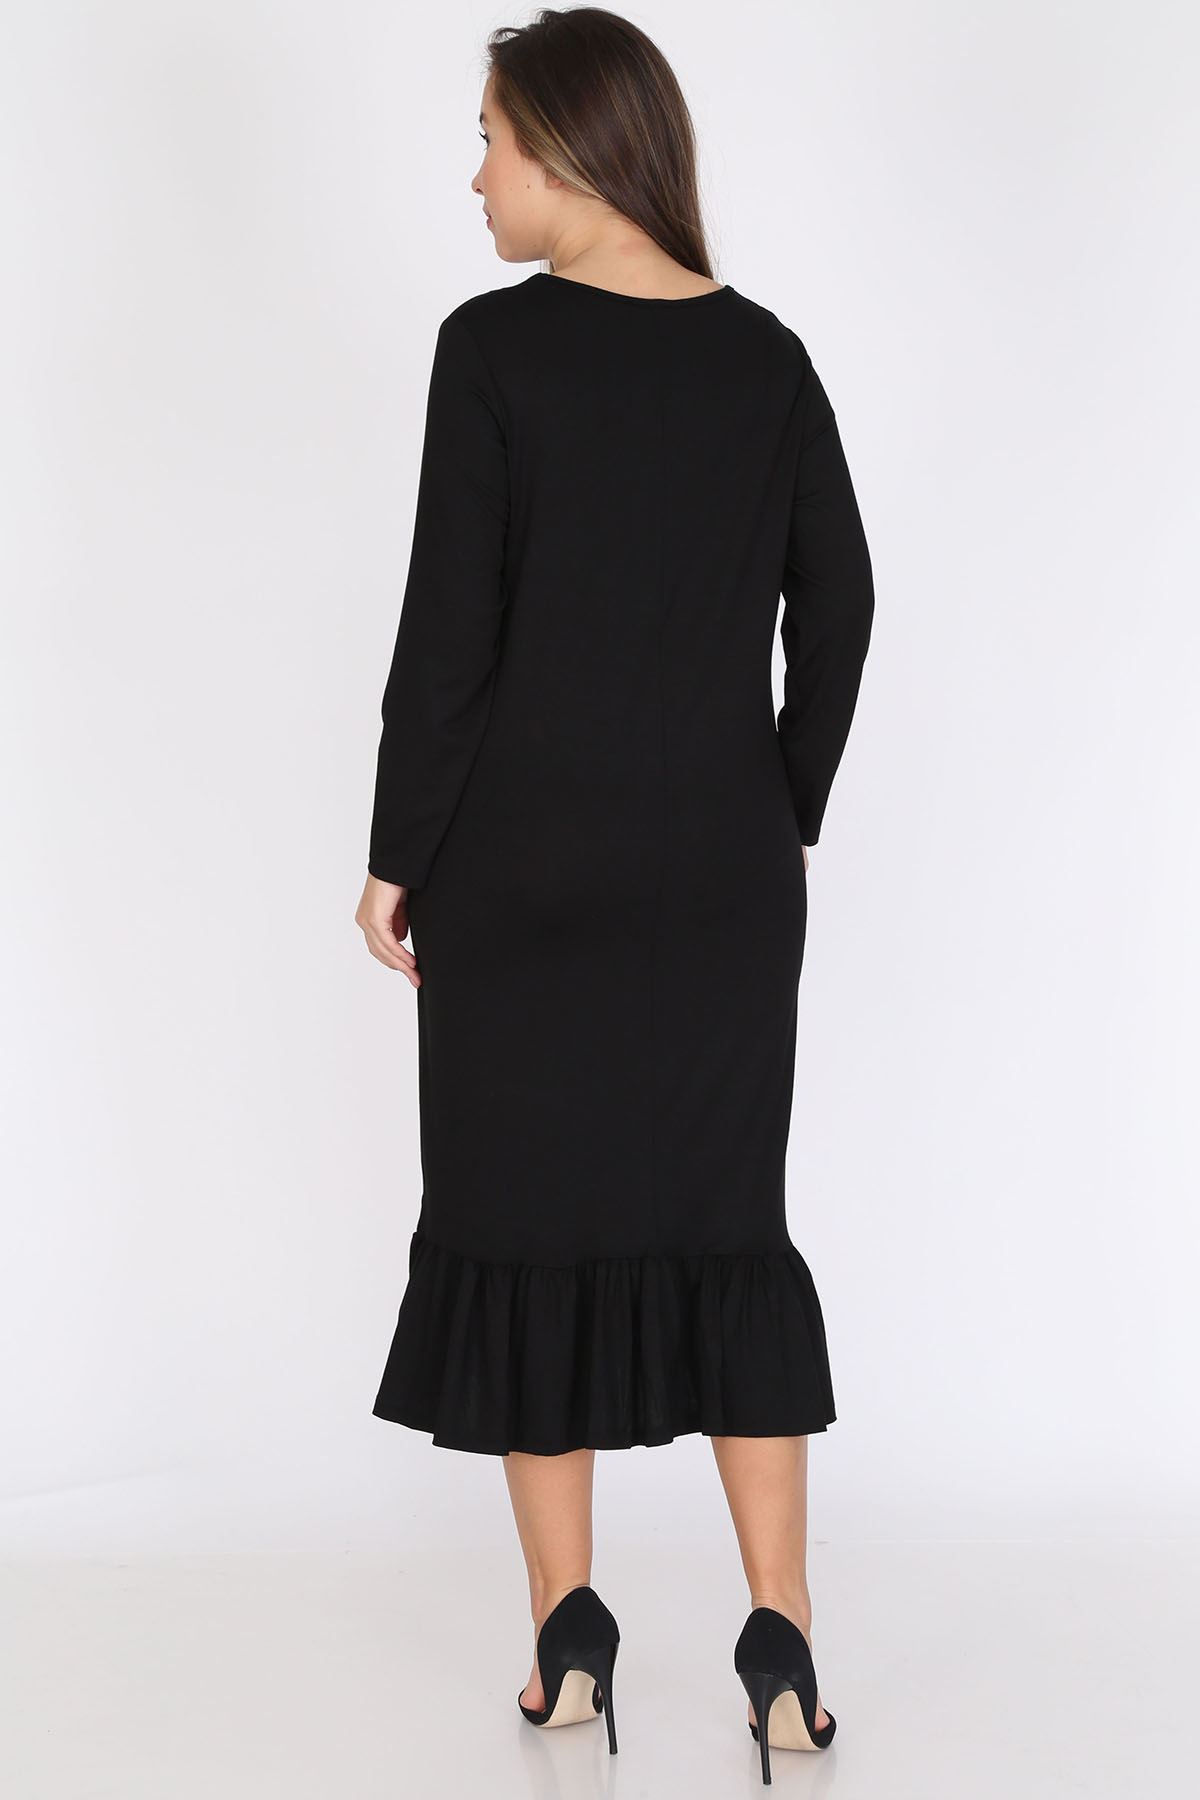 Siyah Uzun Kollu Büyük Beden Elbise 12D-0788